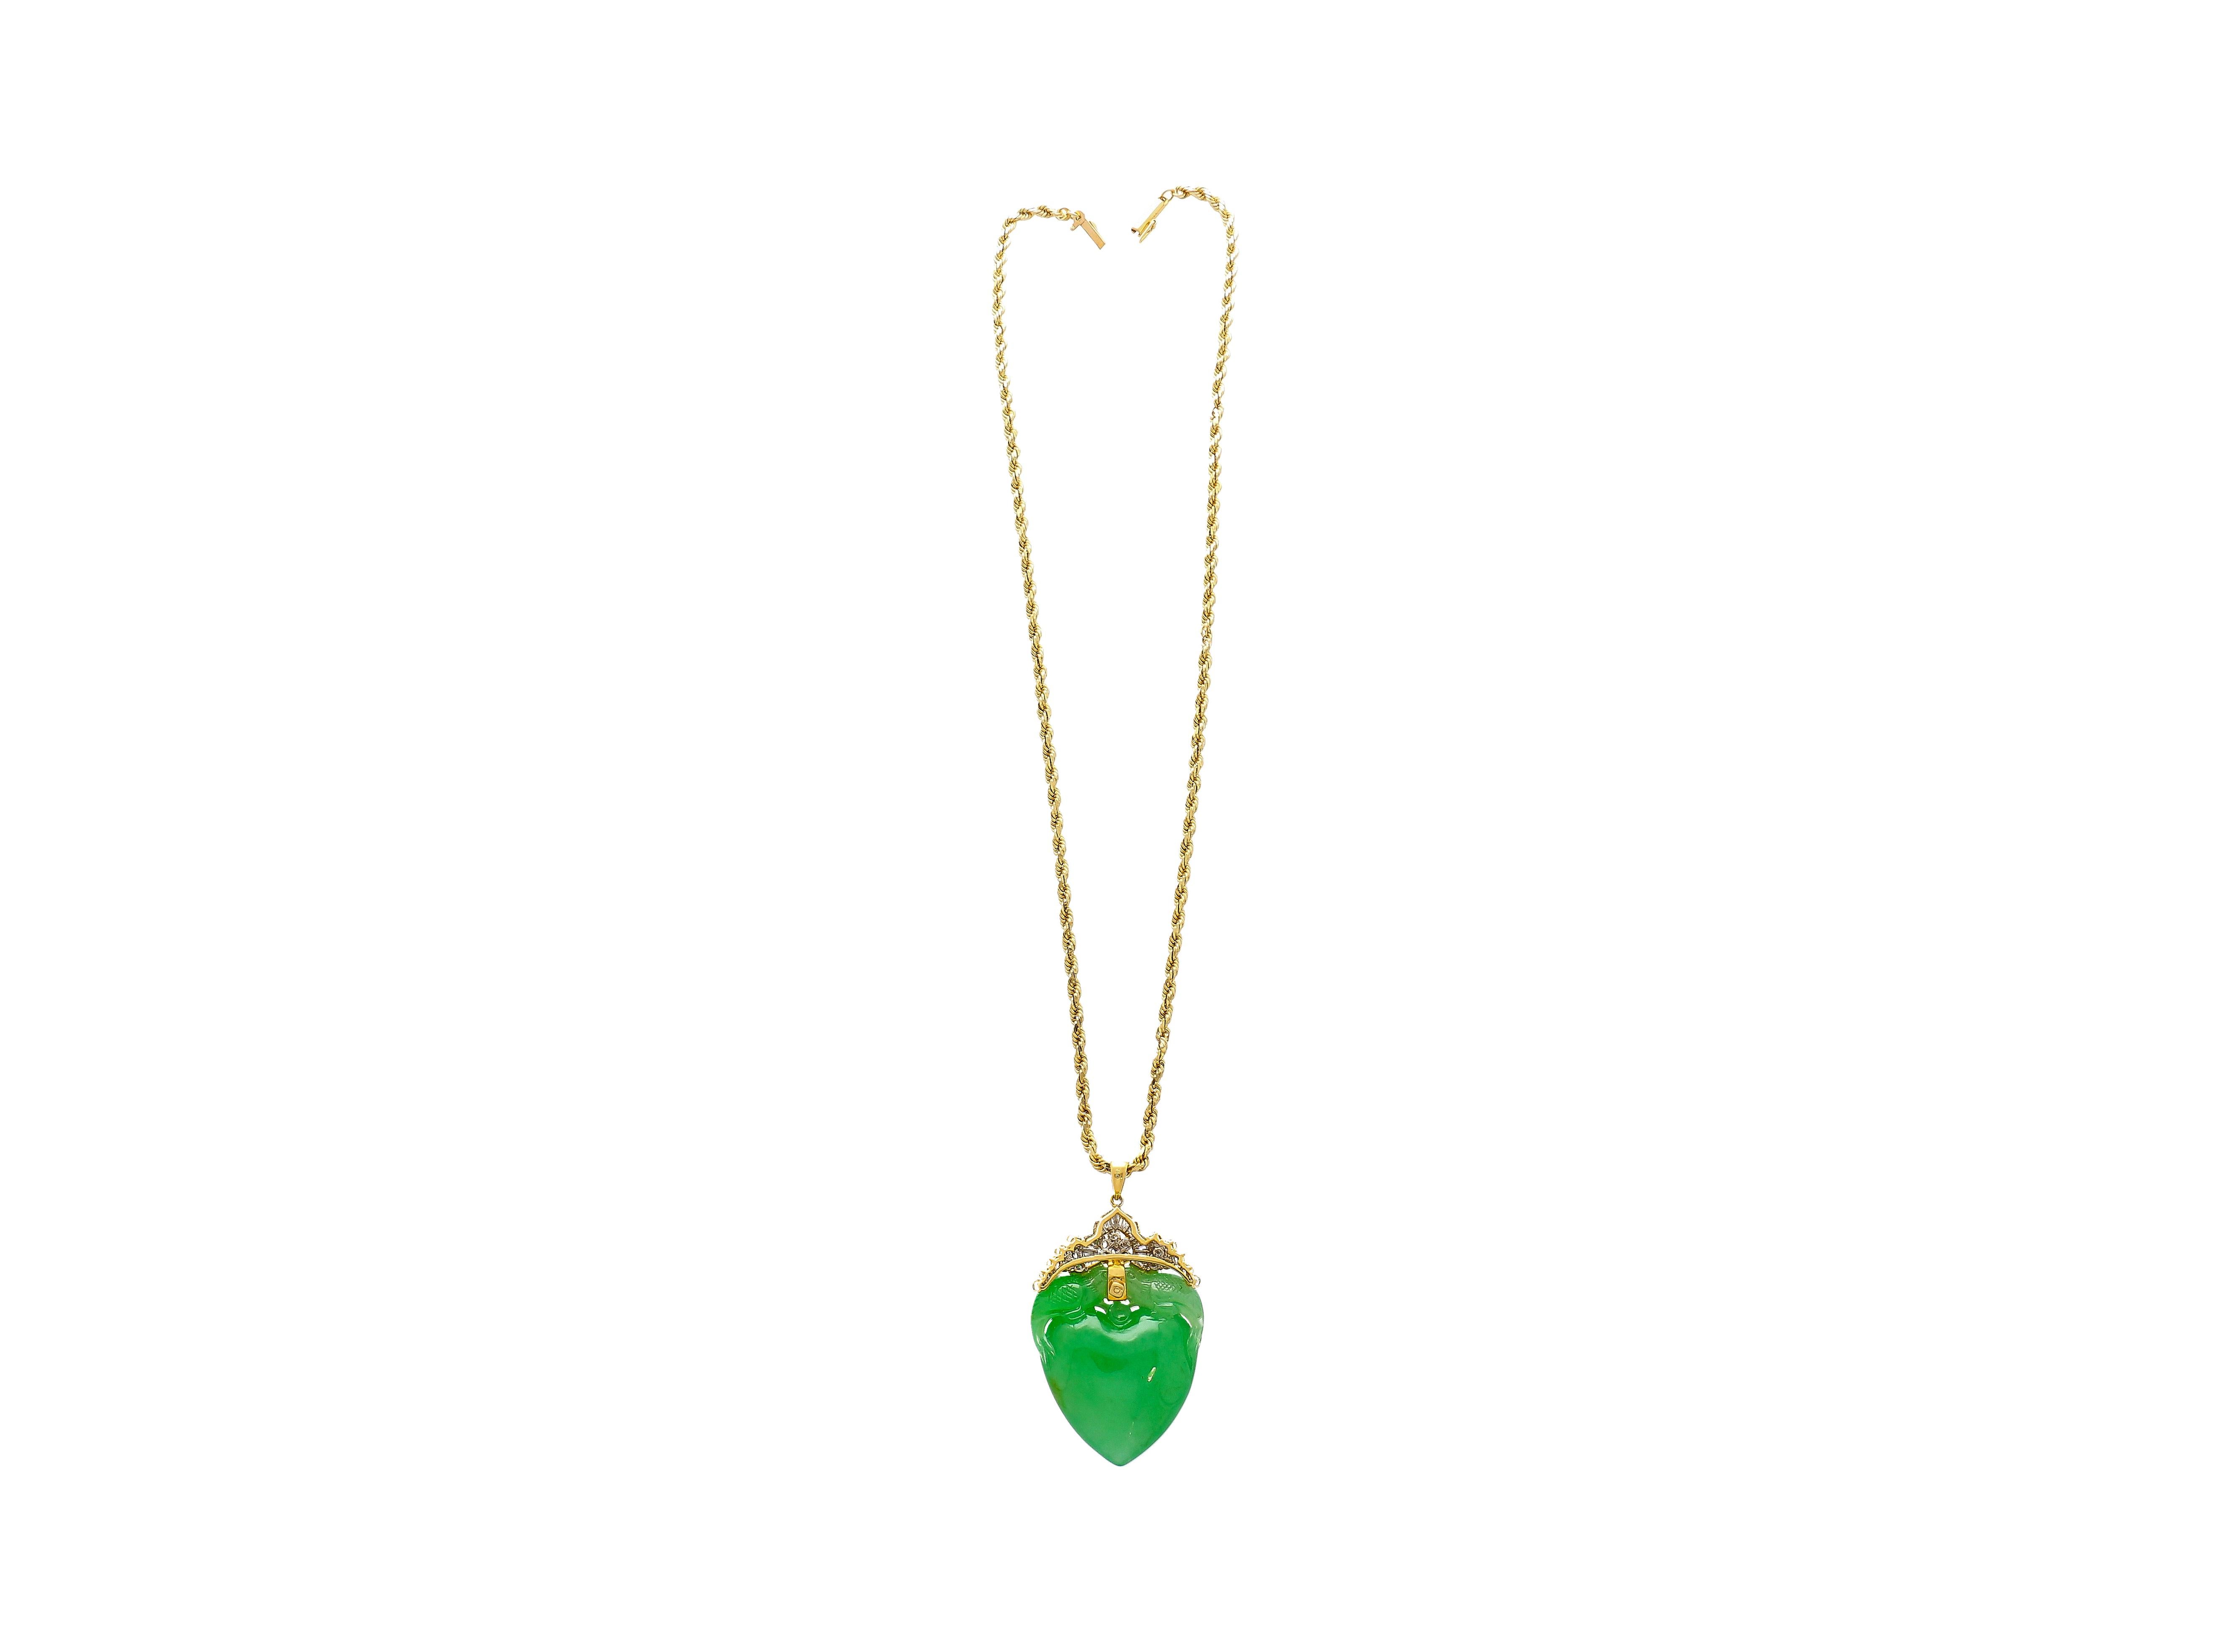 Découvrez un symbole d'amour et d'élégance avec ce collier pendentif en jadéite. Réalisée en or jaune 18 carats, cette pièce exquise présente un pendentif en jade vert sculpté en forme de cœur, arborant un magnifique motif d'alimentation à deux